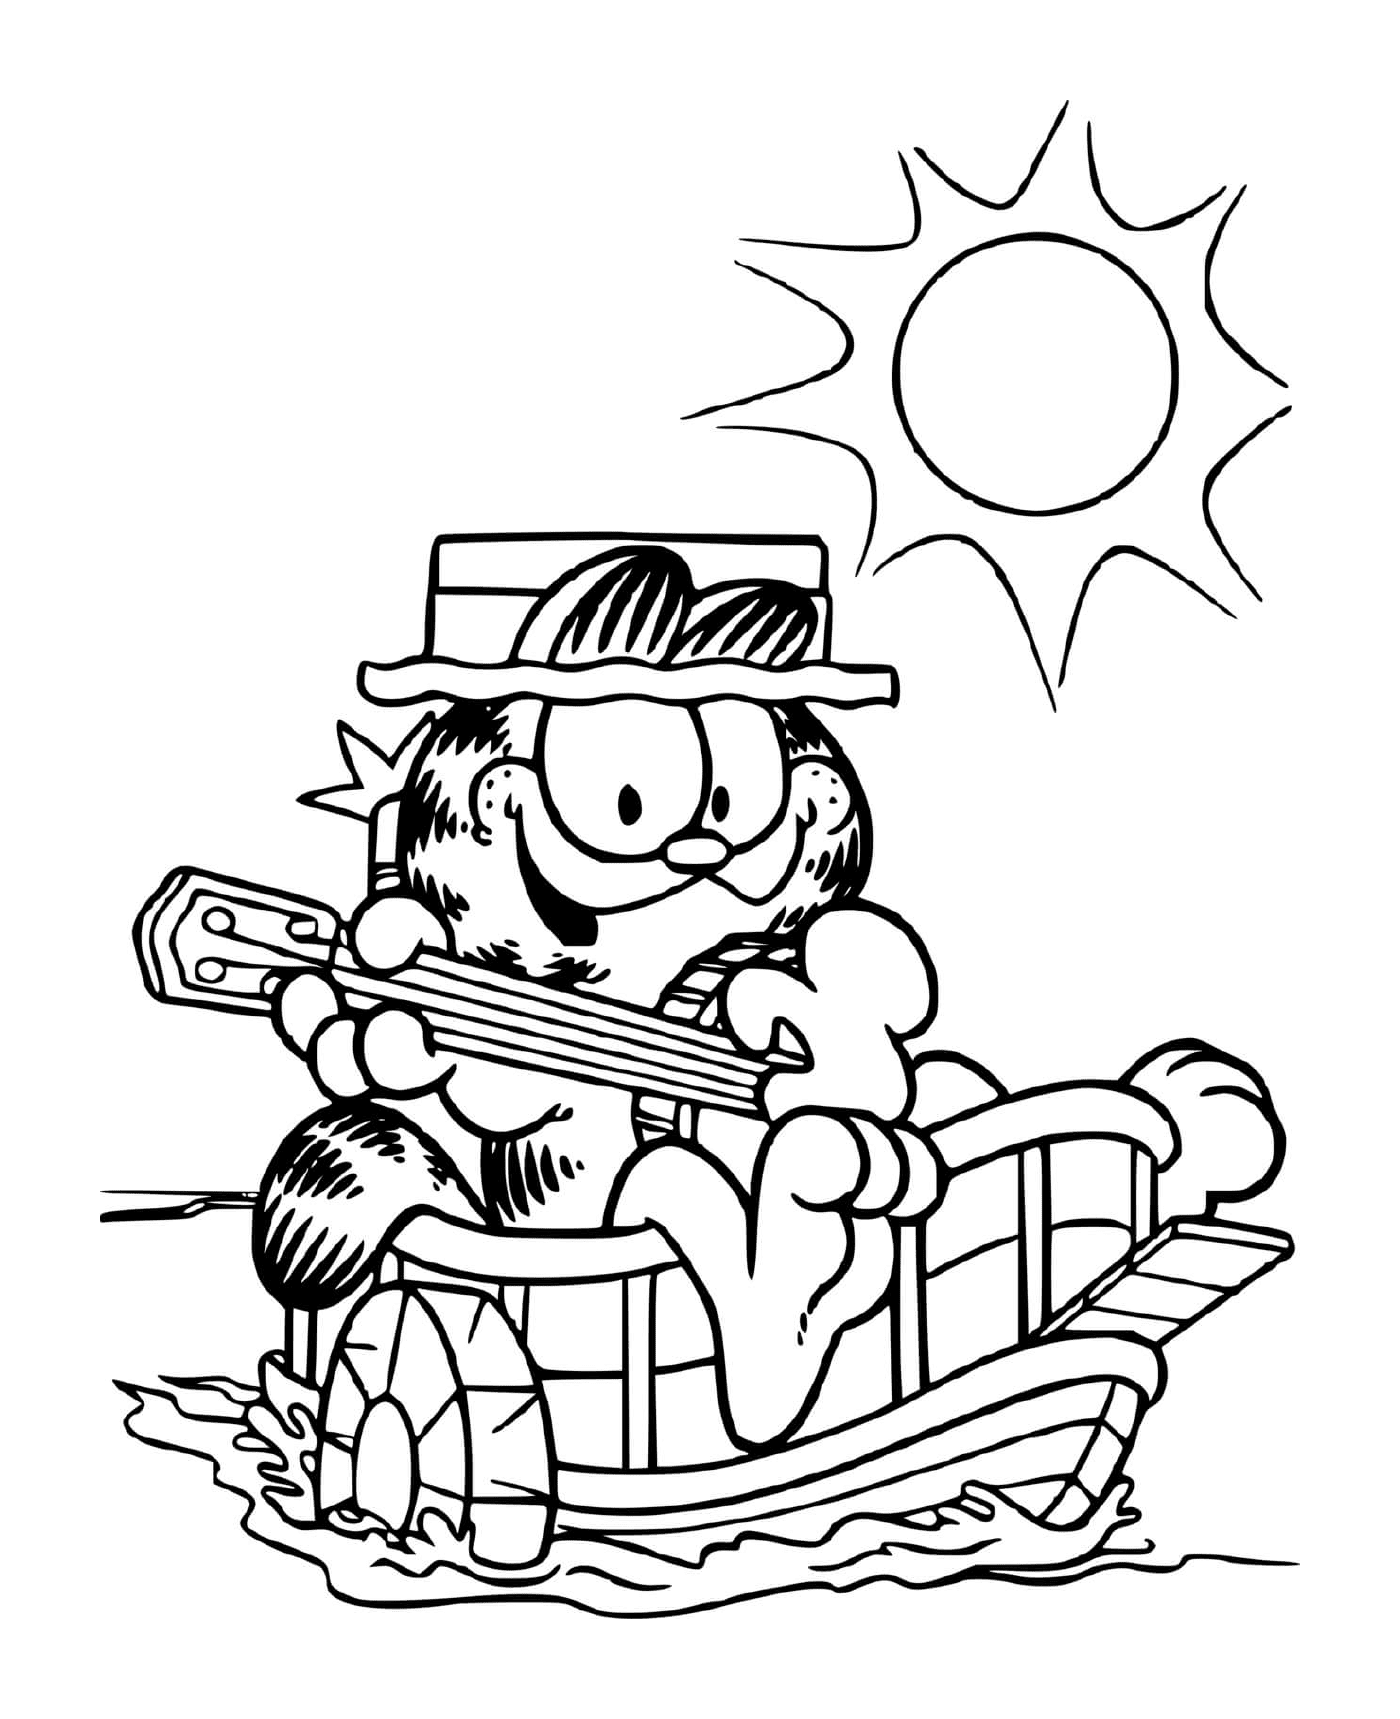  Garfield suona la chitarra sulla sua barca 